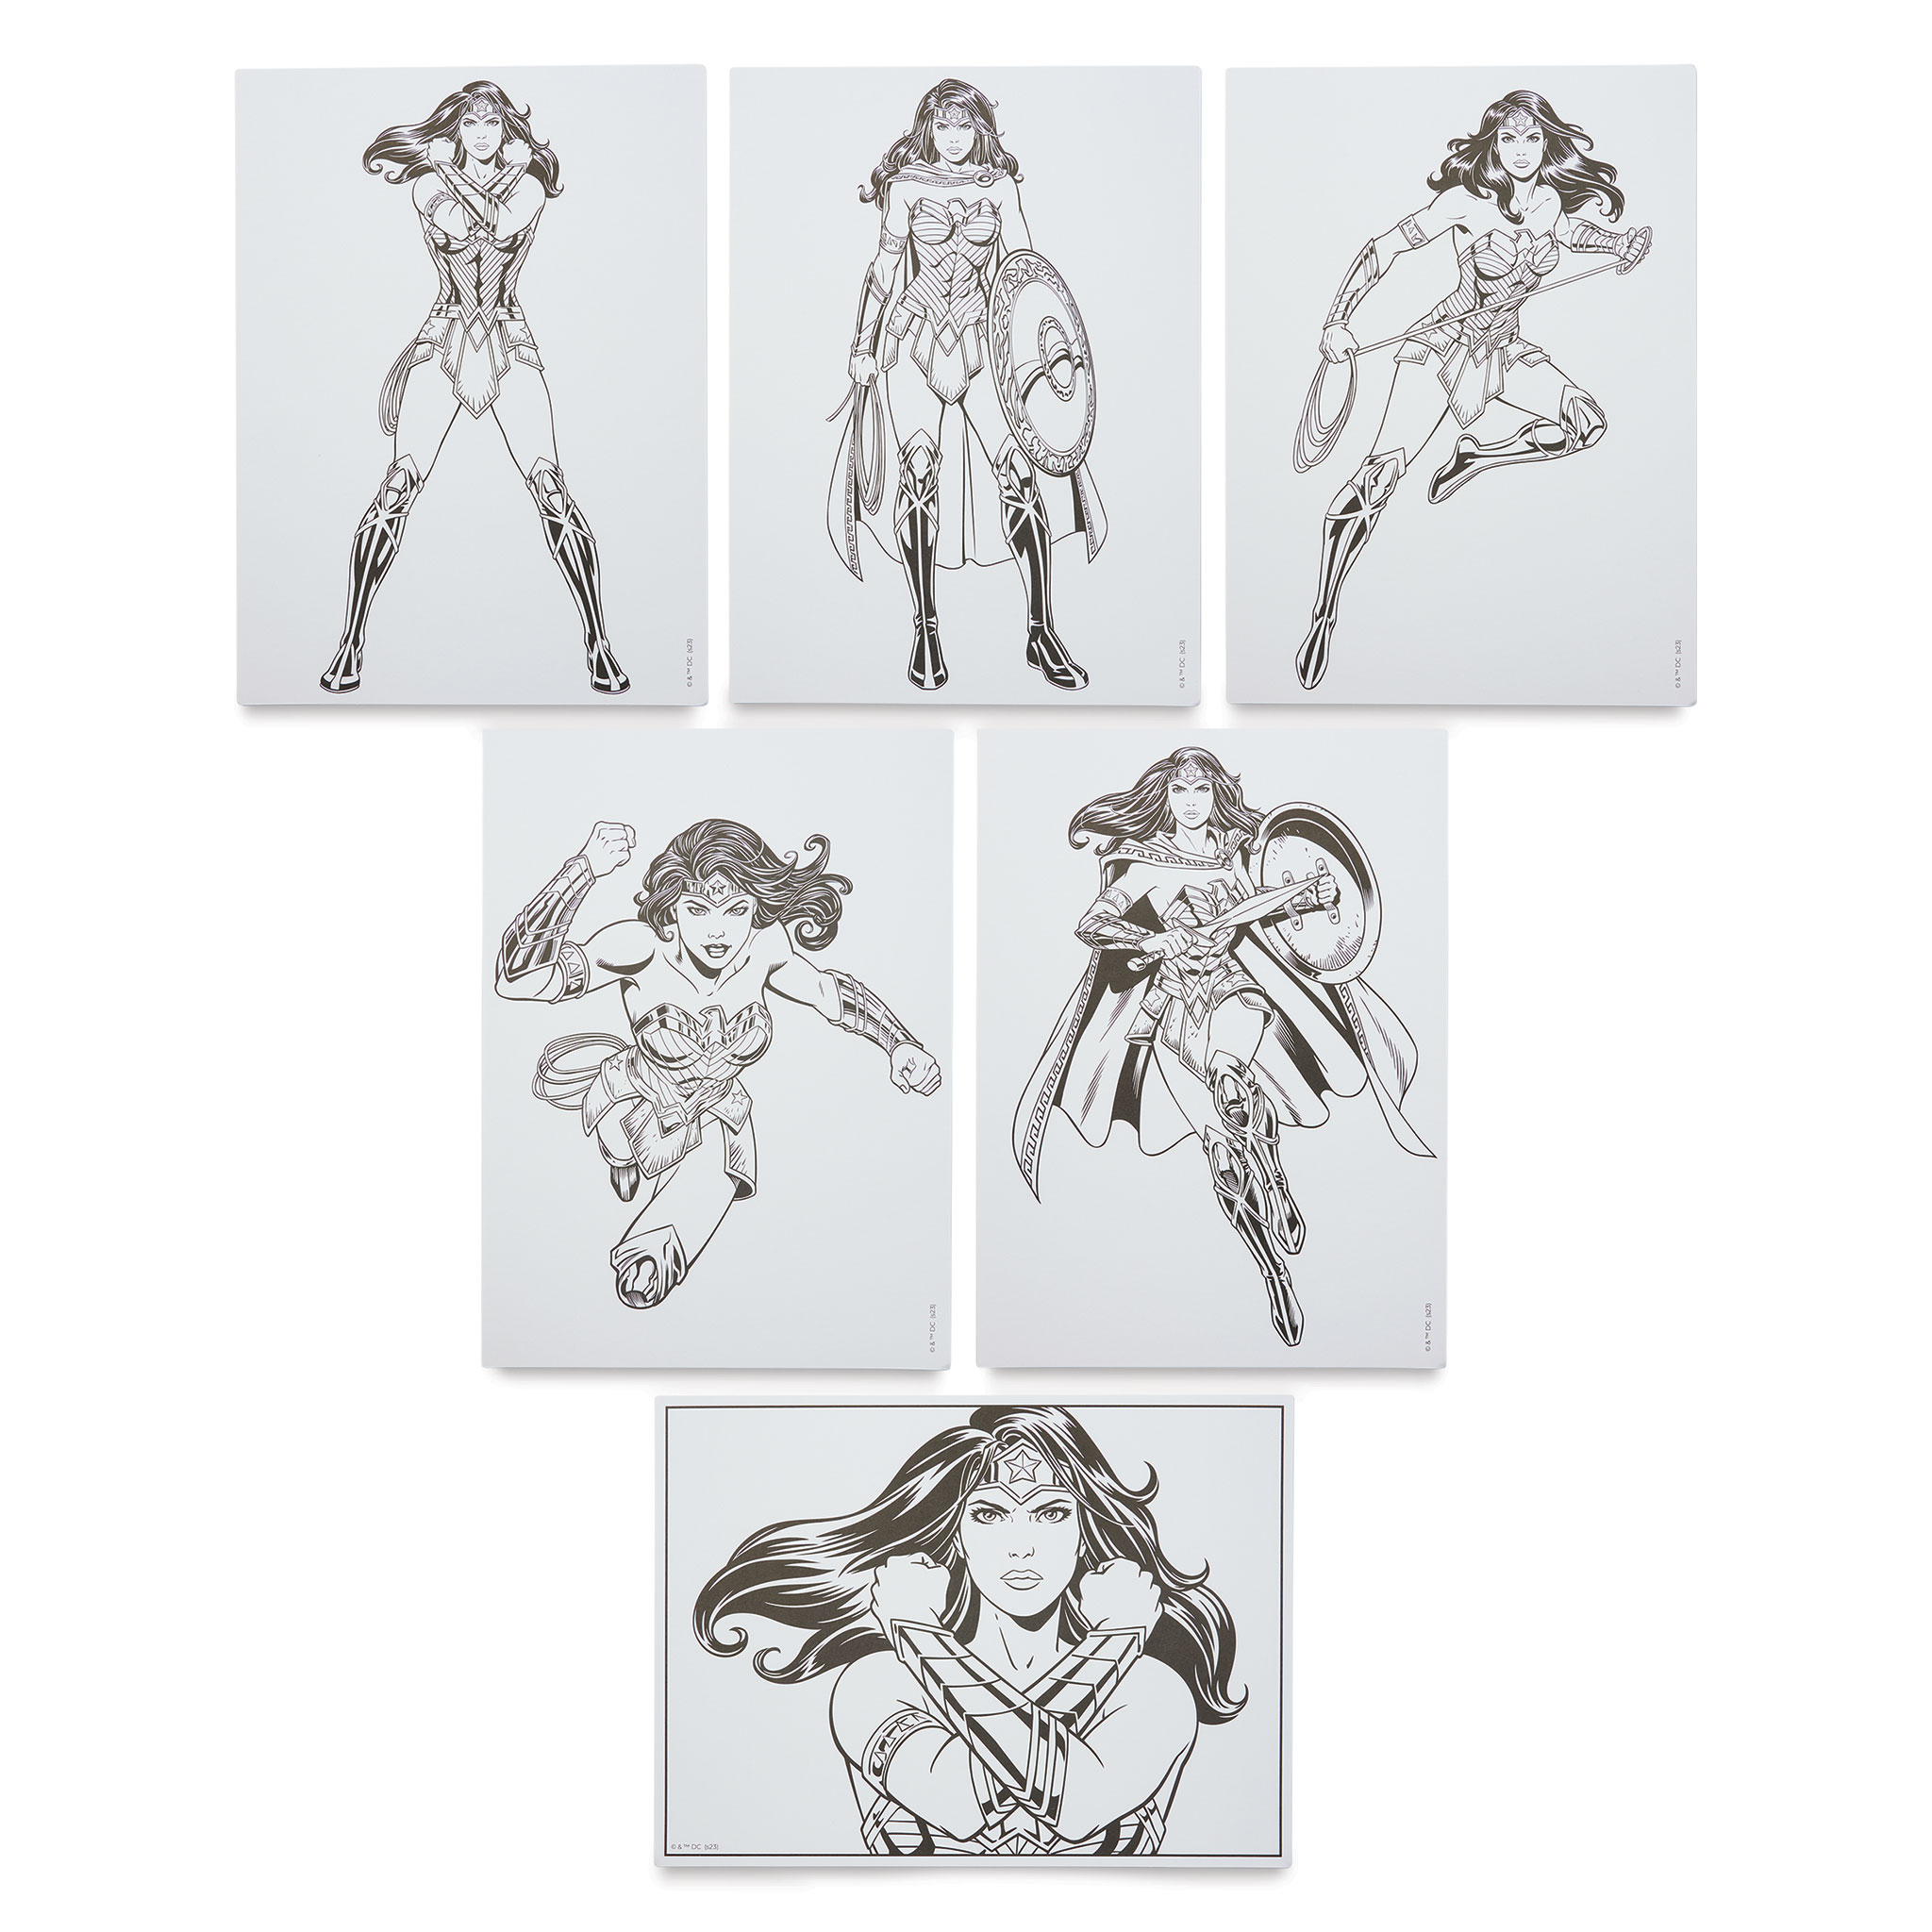 Spectrum Noir Pro Fan-art Wonder Woman Kit | Michaels